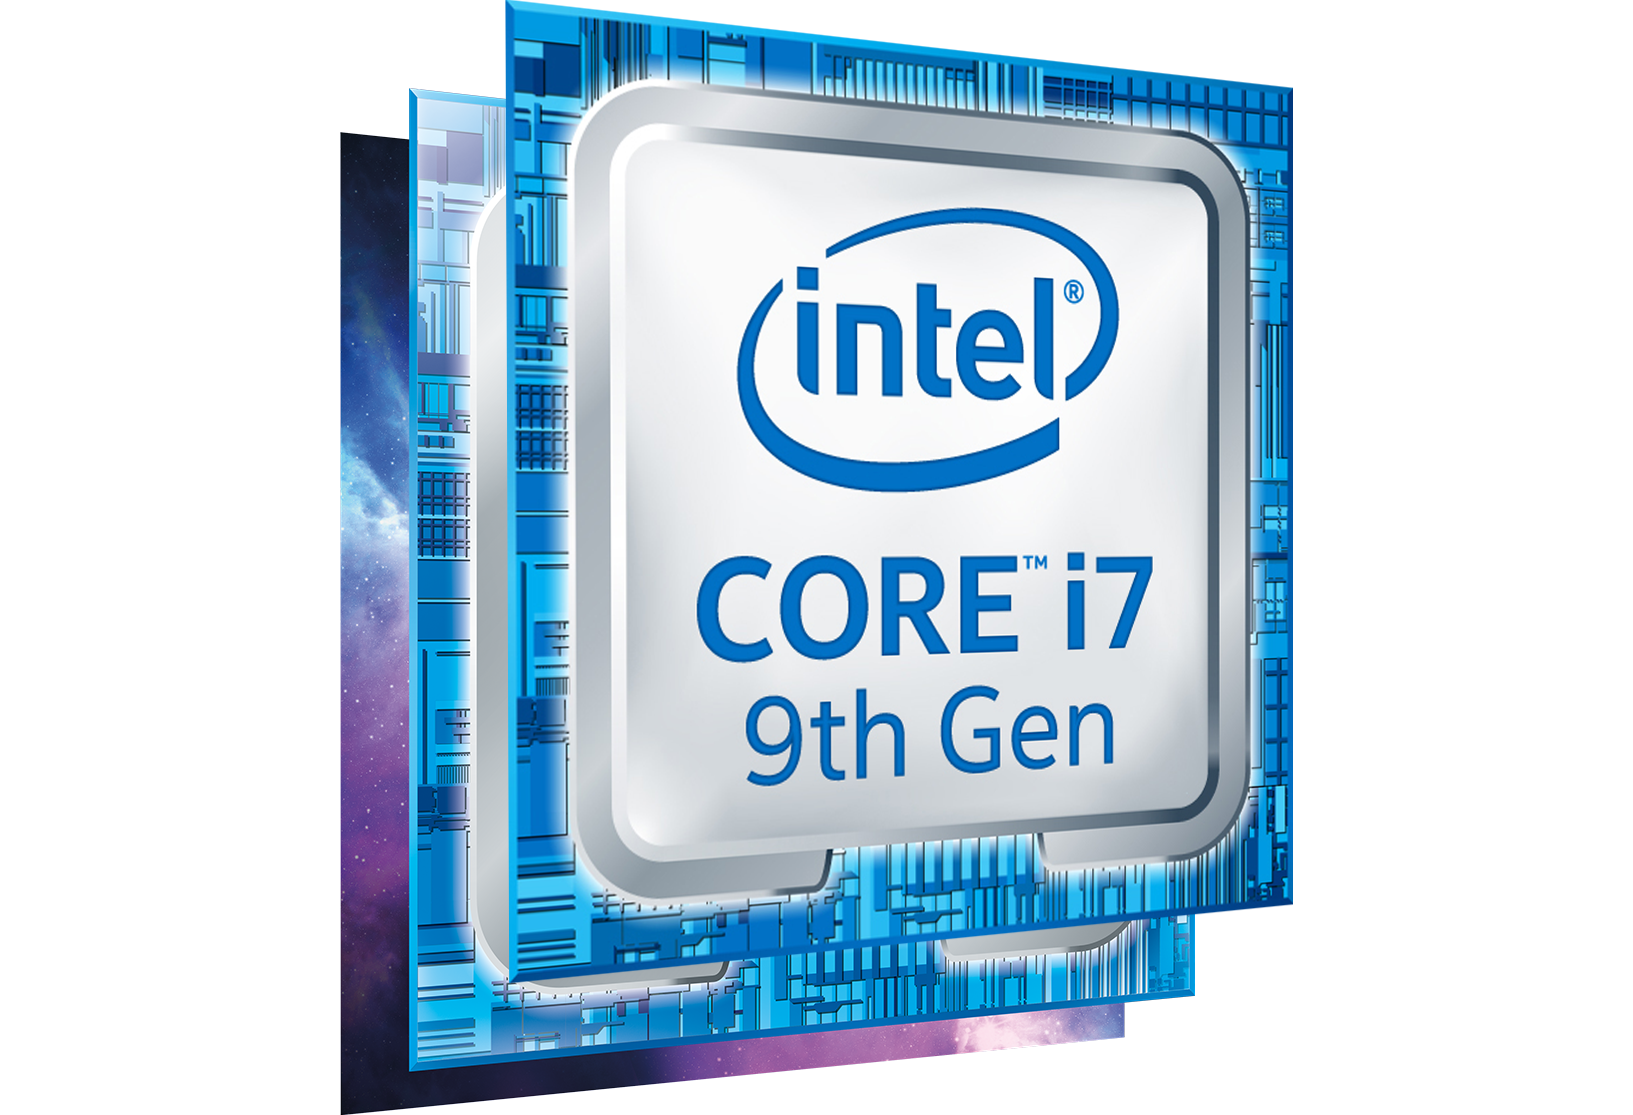 Intel core i7 частота. Intel Core i9 9th Gen. Процессор Intel Core i5 9th Gen. Процессор Интел Core i7. Intel Core i7-9700k.